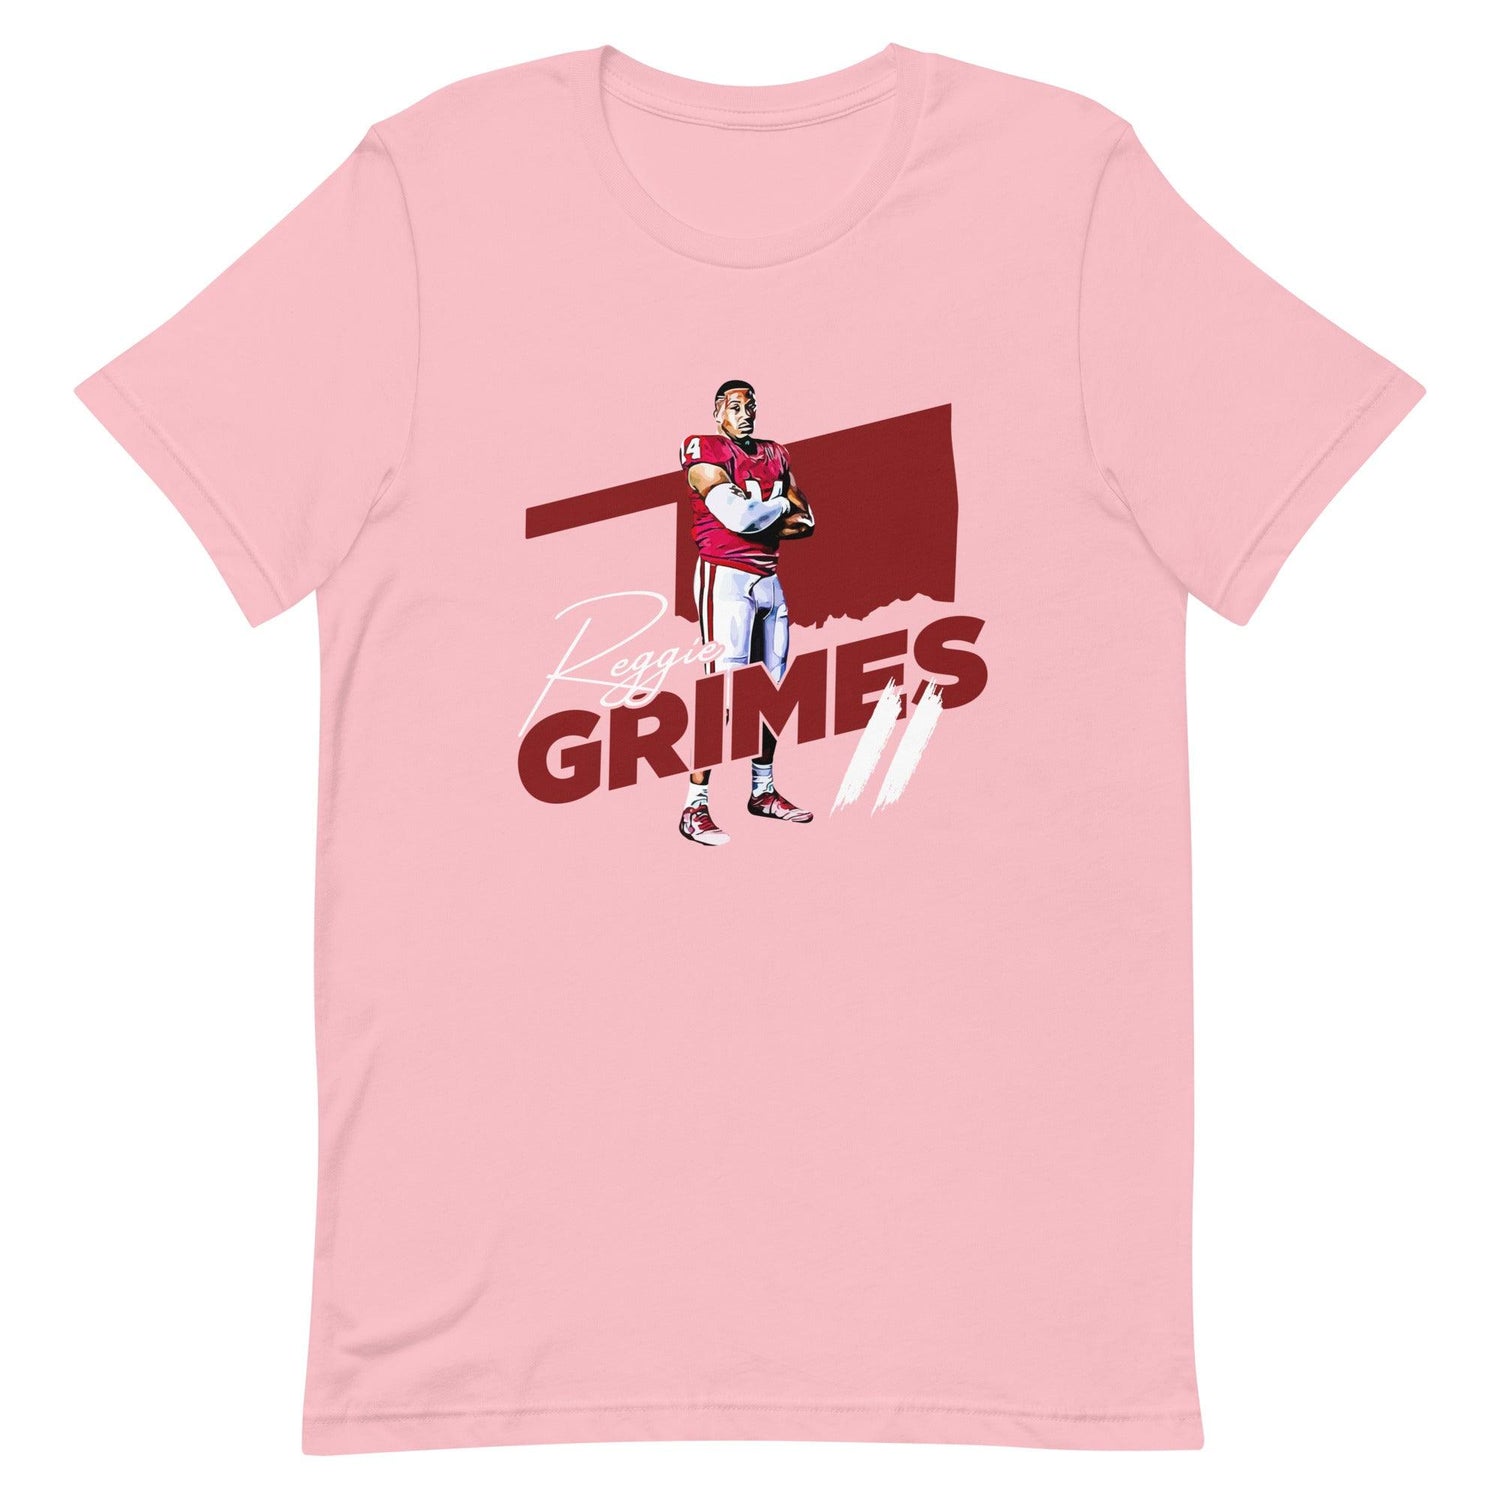 Reggie Grimes II "OKL" t-shirt - Fan Arch